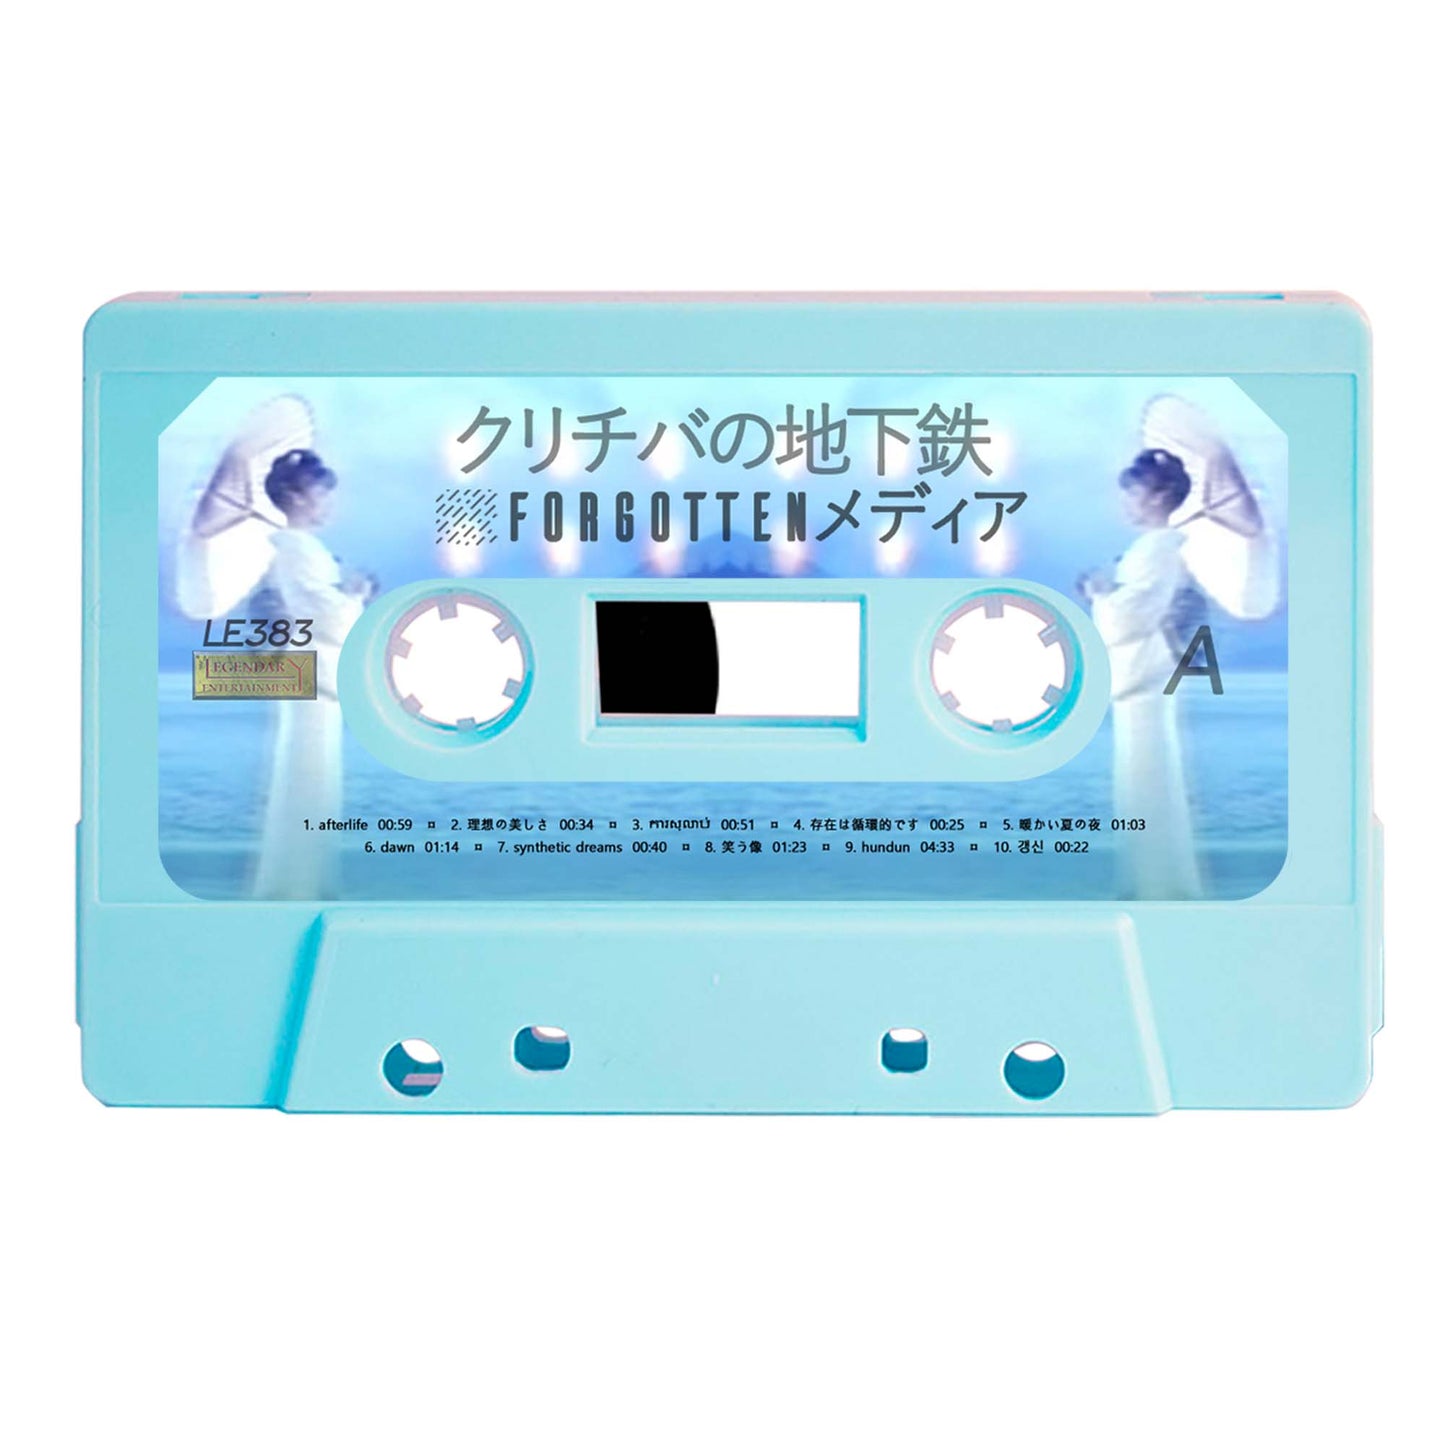 クリチバの地下鉄 - "⛆forgottenメディア" Limited Edition Cassette Tape